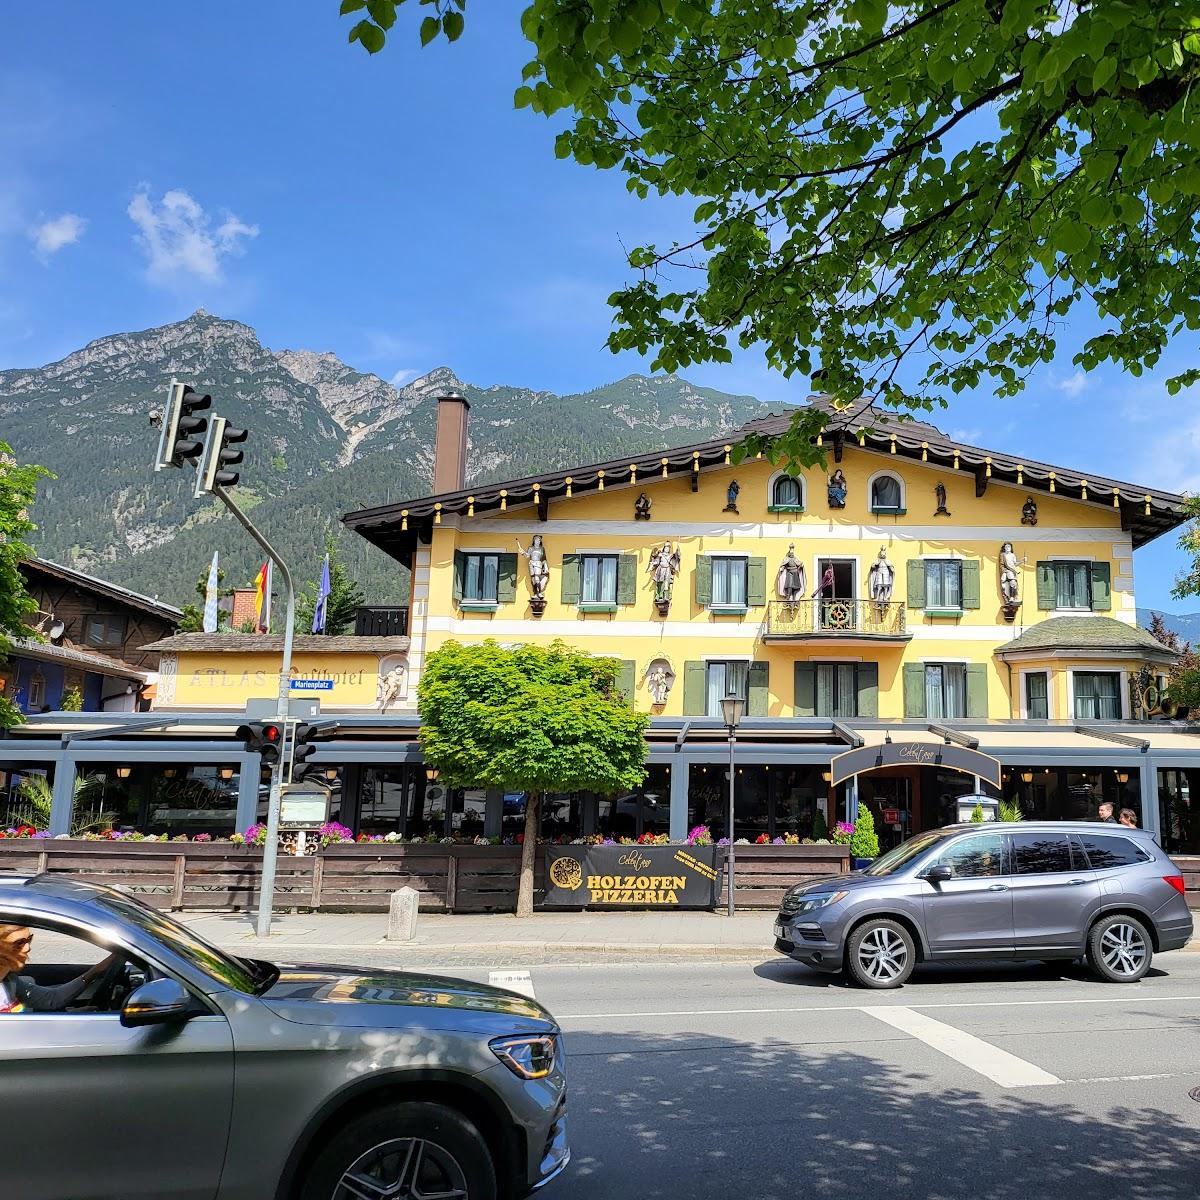 Restaurant "Atlas Posthotel" in Garmisch-Partenkirchen